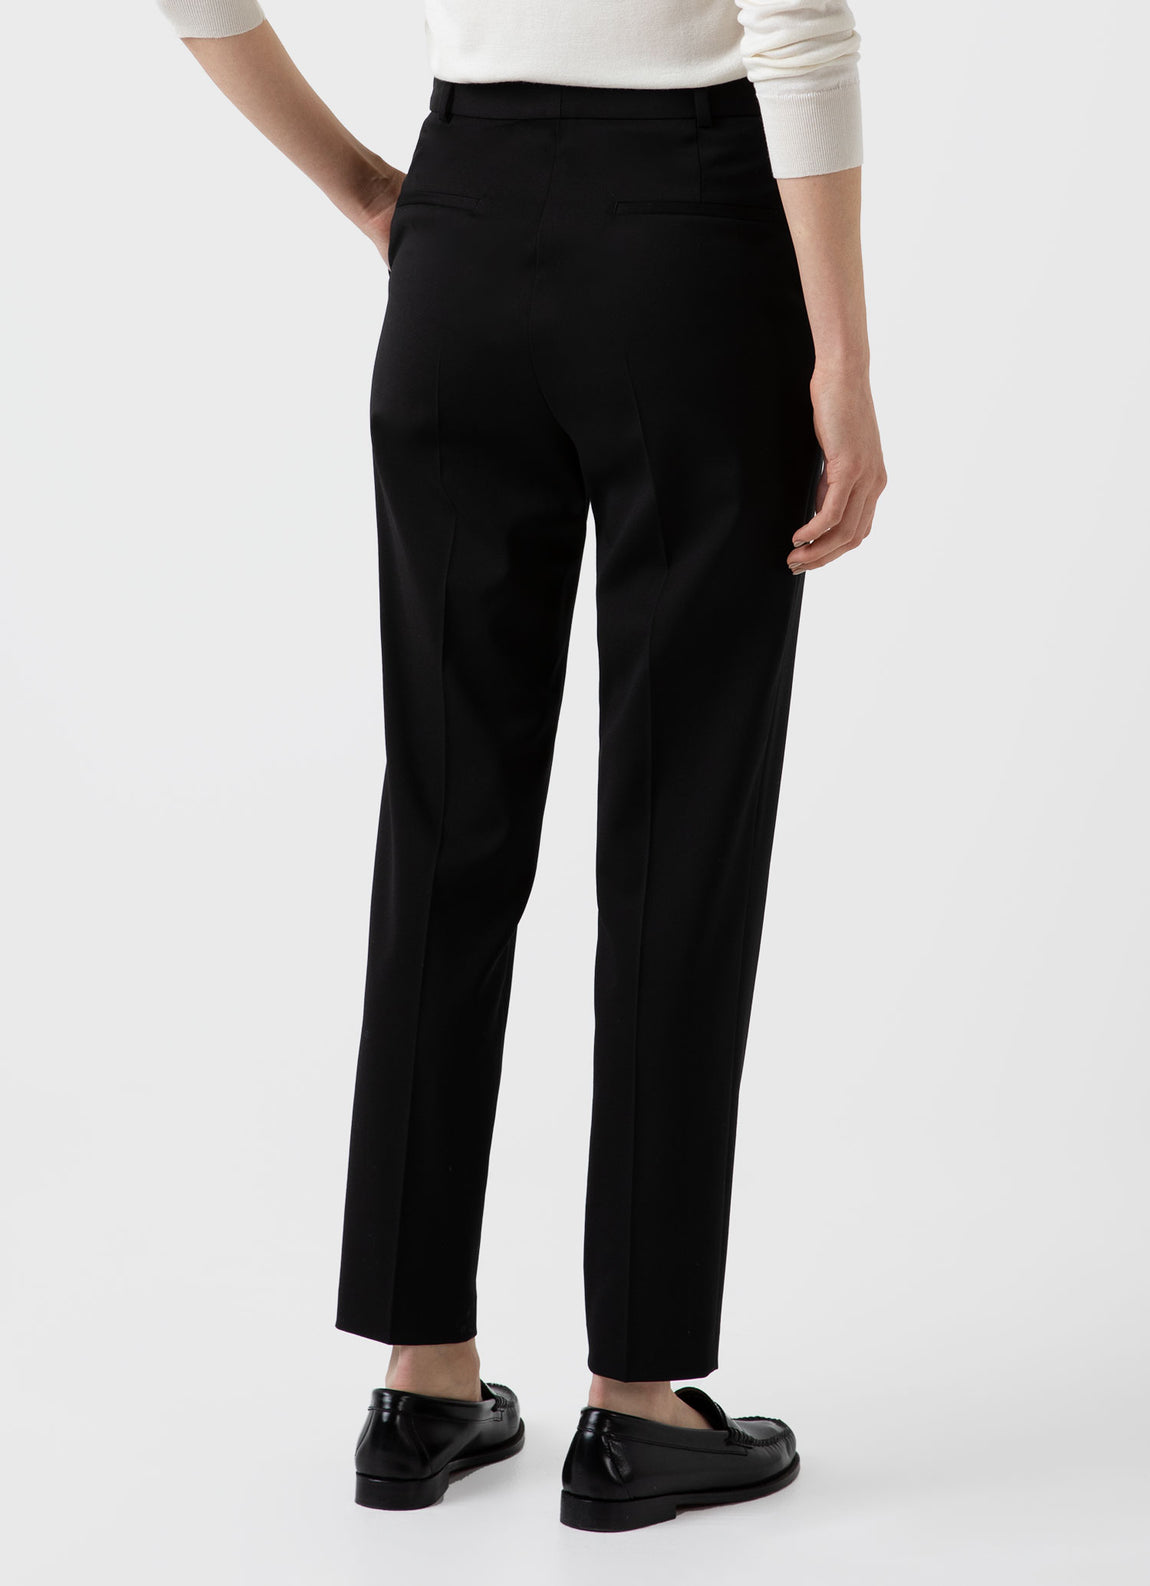 Women's Tapered Trouser in Black | Sunspel